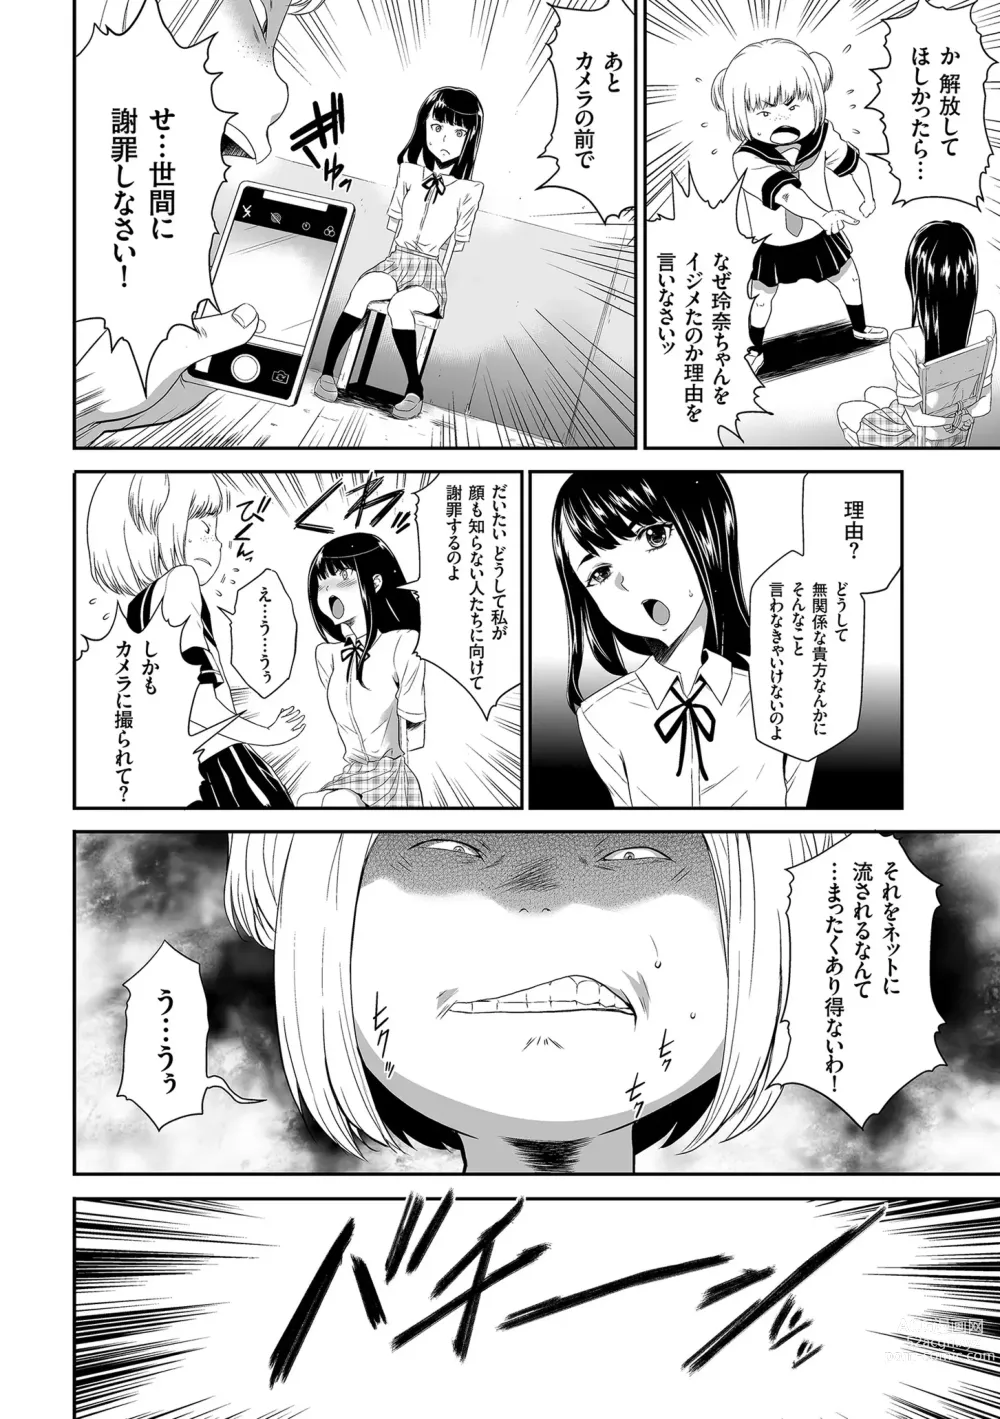 Page 8 of manga Idol Kankin Live!